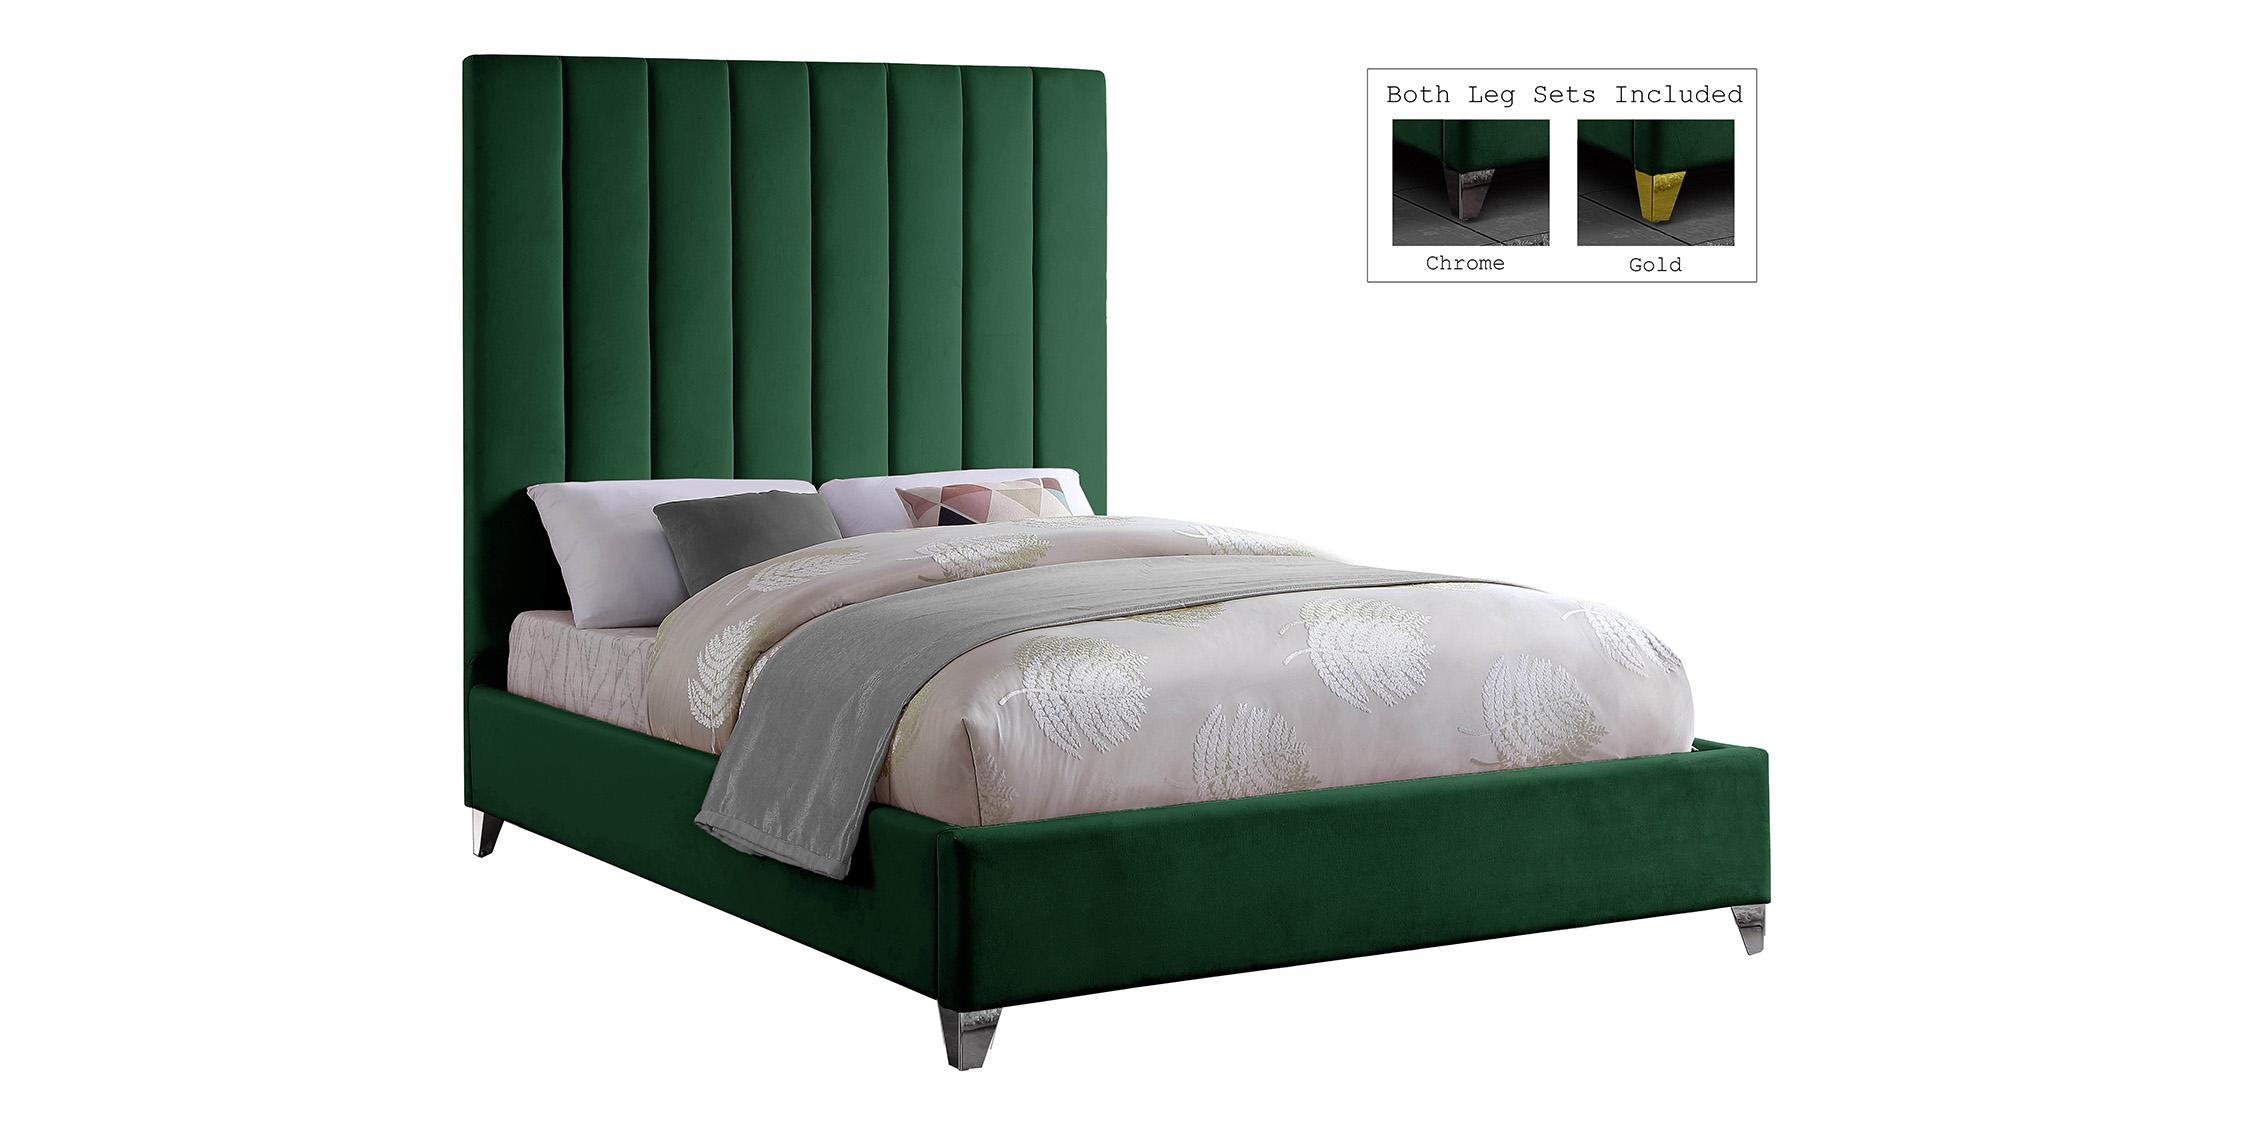 

    
ViaGreen-F Meridian Furniture Platform Bed
